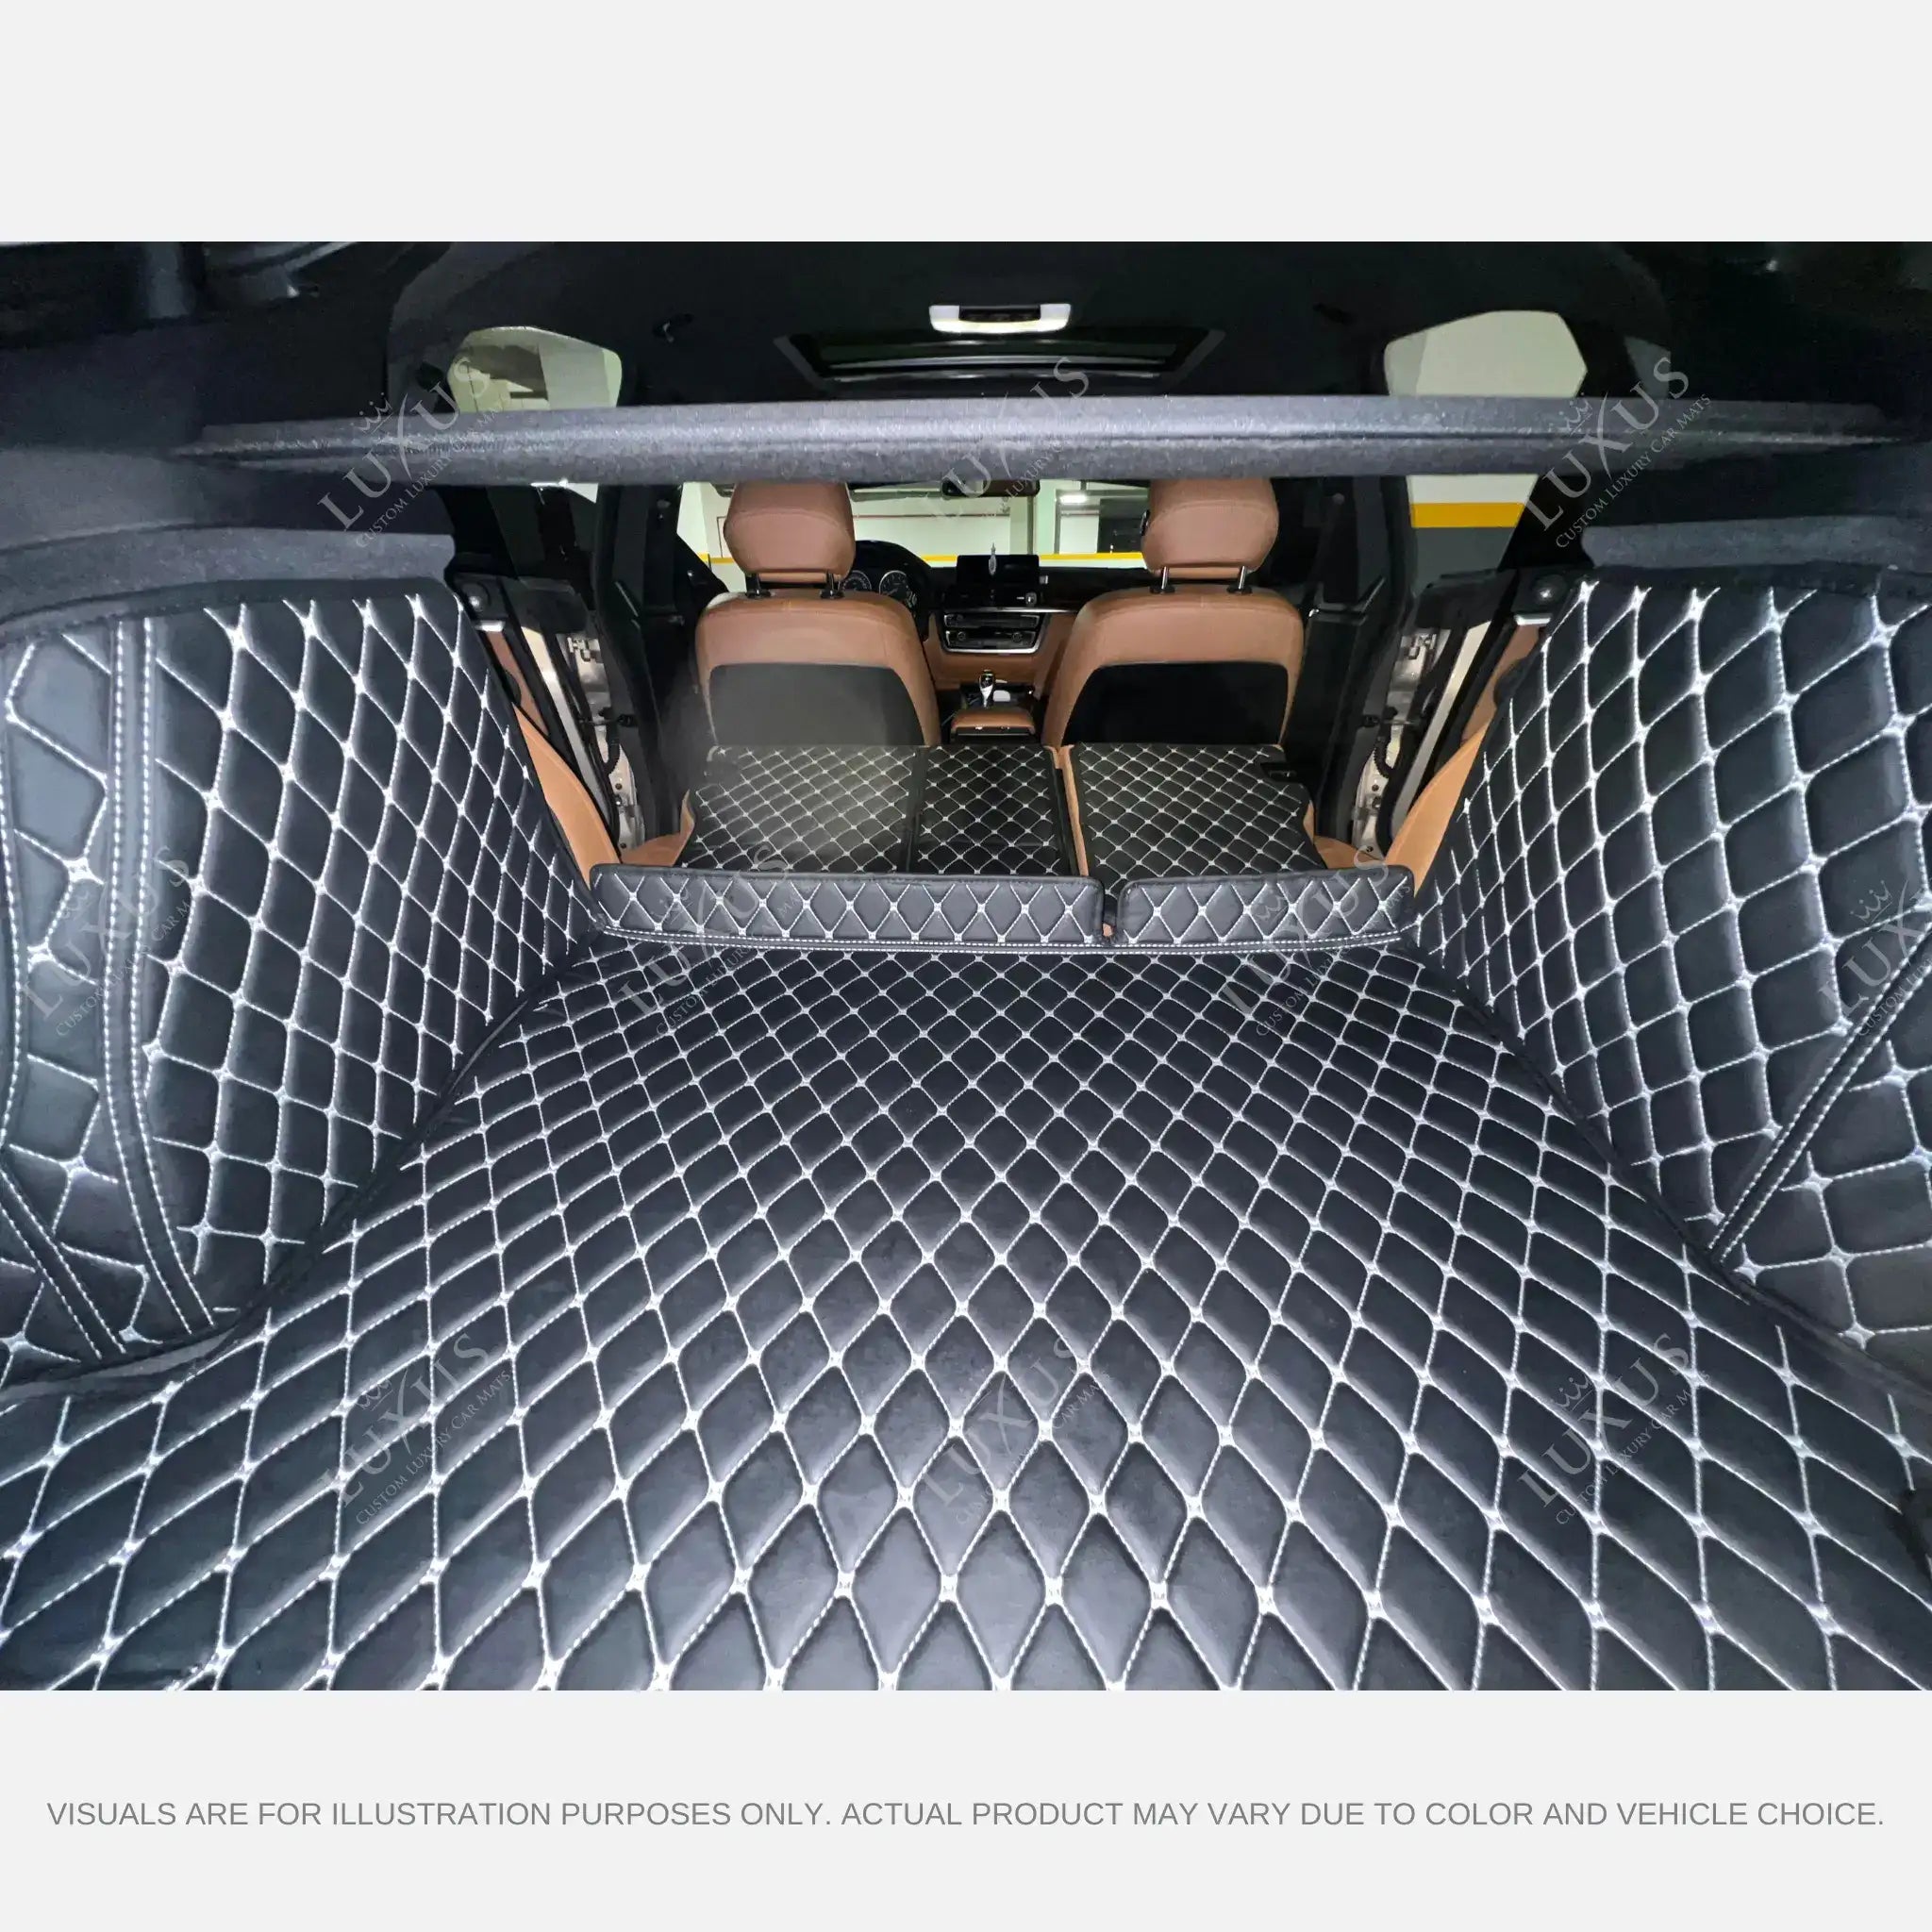 Luxus Car Mats™ - Alfombrilla para maletero/maletero de cuero de lujo con costuras en 3D en blanco y negro